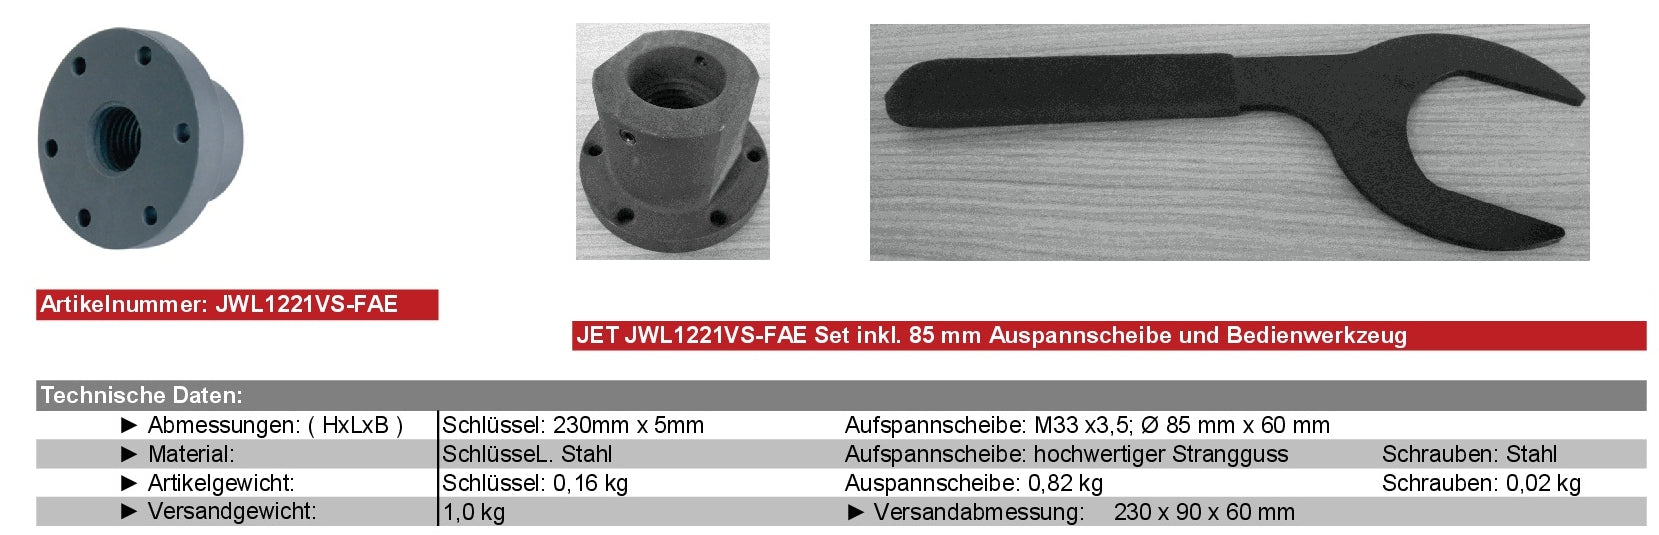 JET Zubehör Drechseln JWL1221VS-FAE Aufspannscheibe 76 mm ( M33 x 3,5 mm )